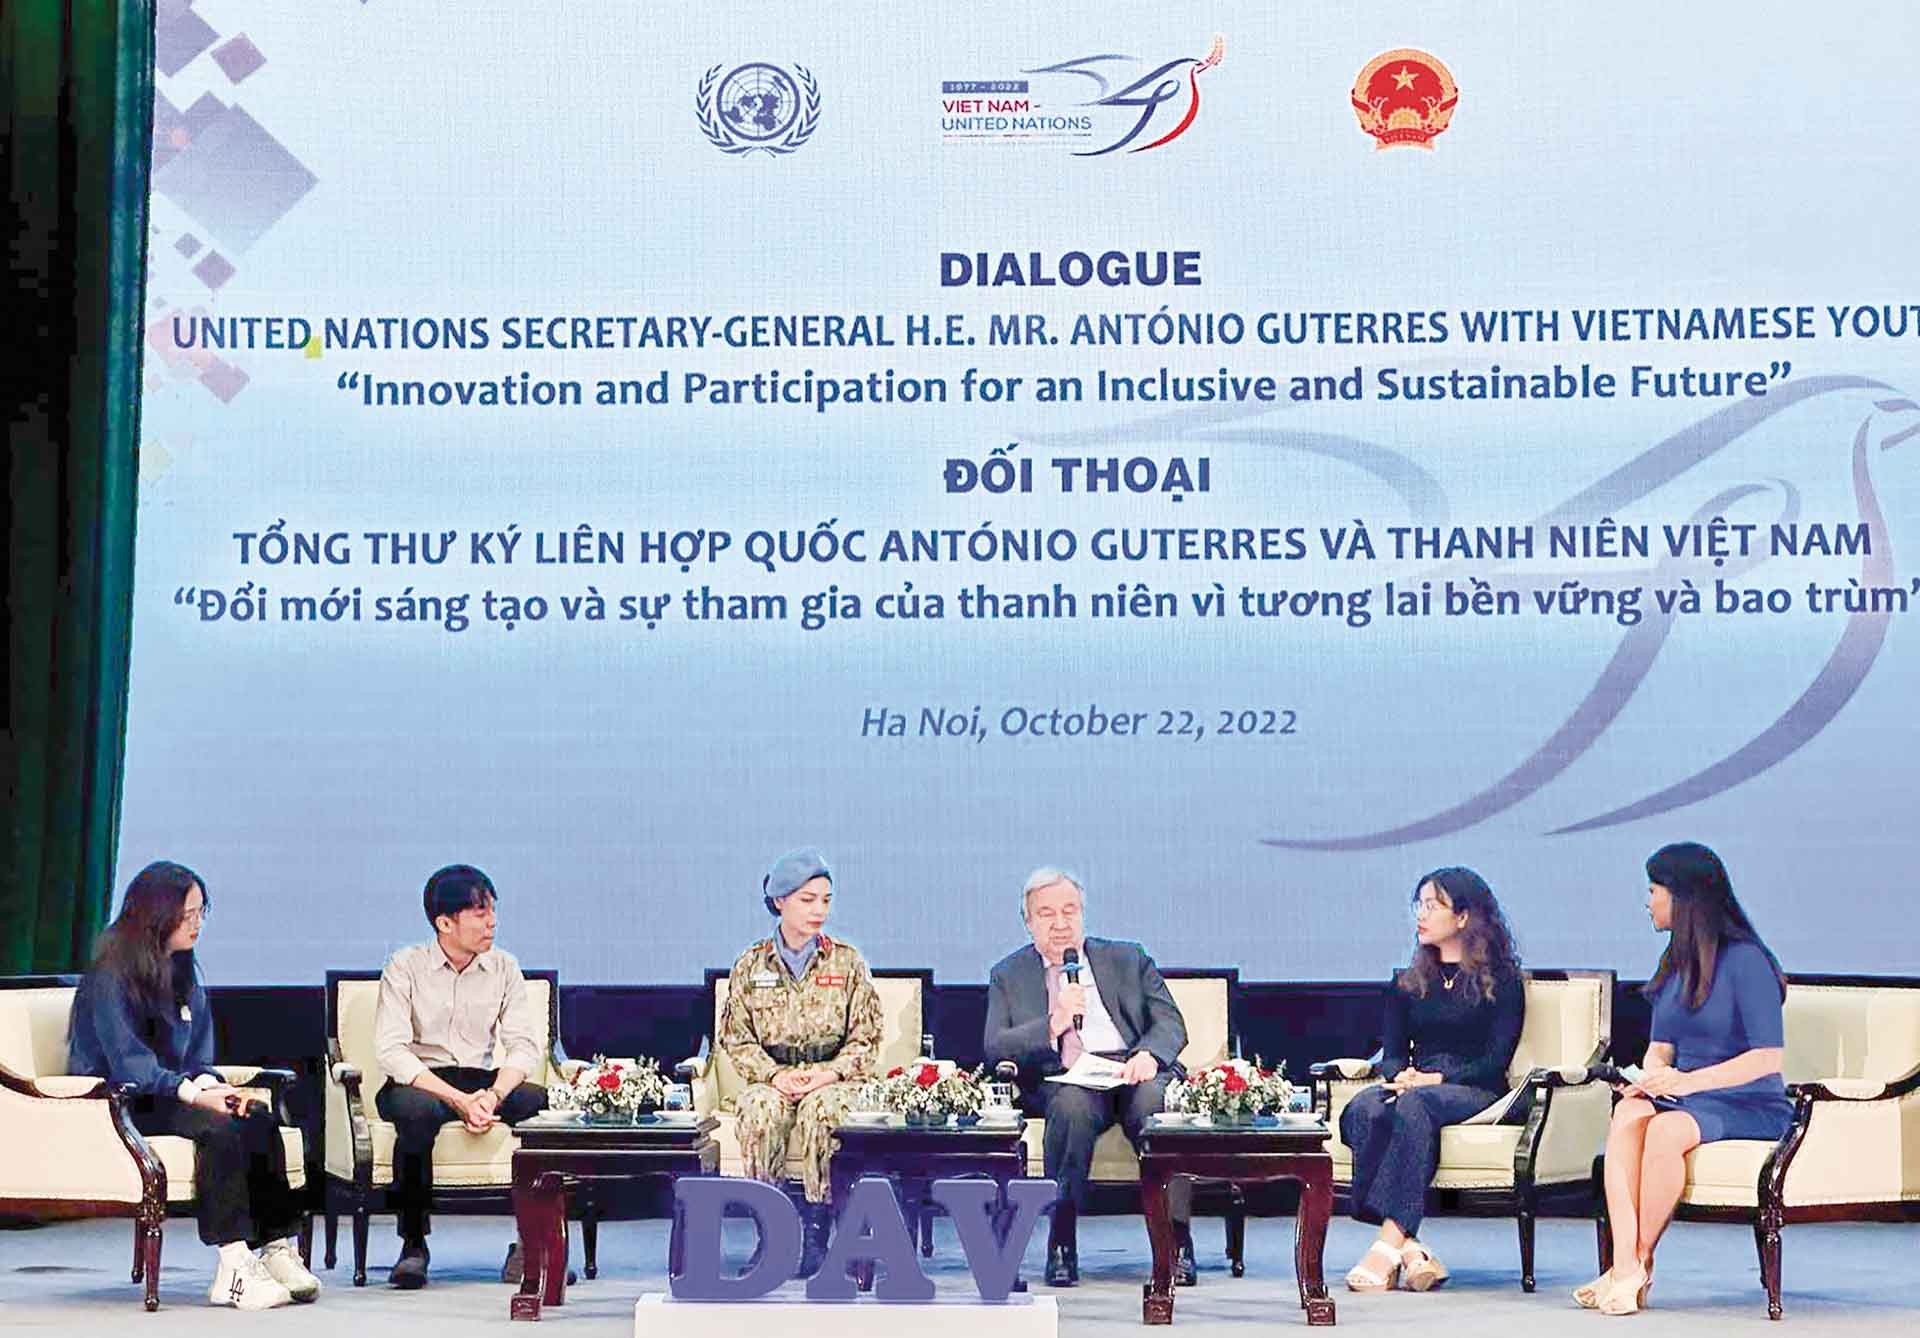 Tổng thư ký Liên hợp quốc António Guterres đối thoại với gần 400 lãnh đạo trẻ, thanh niên Việt Nam  tại Học viện Ngoại giao nhân chuyến thăm của ông tới Việt Nam vào tháng 10/2022.